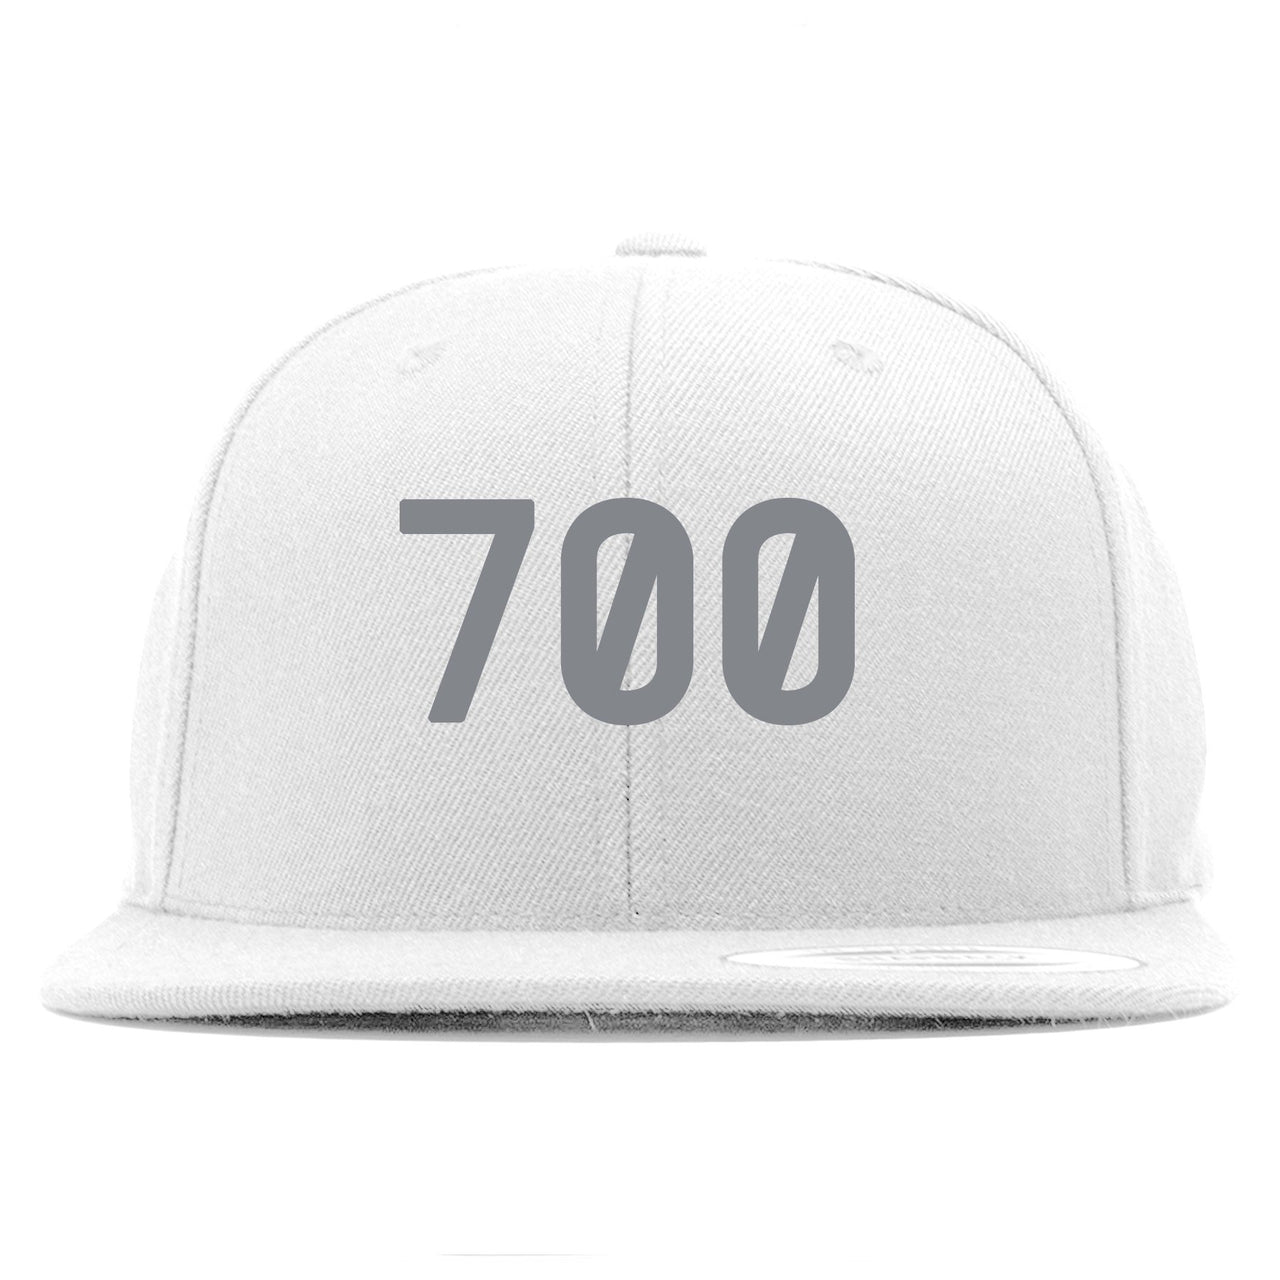 Tephra v2 700s Snapback | 700, White